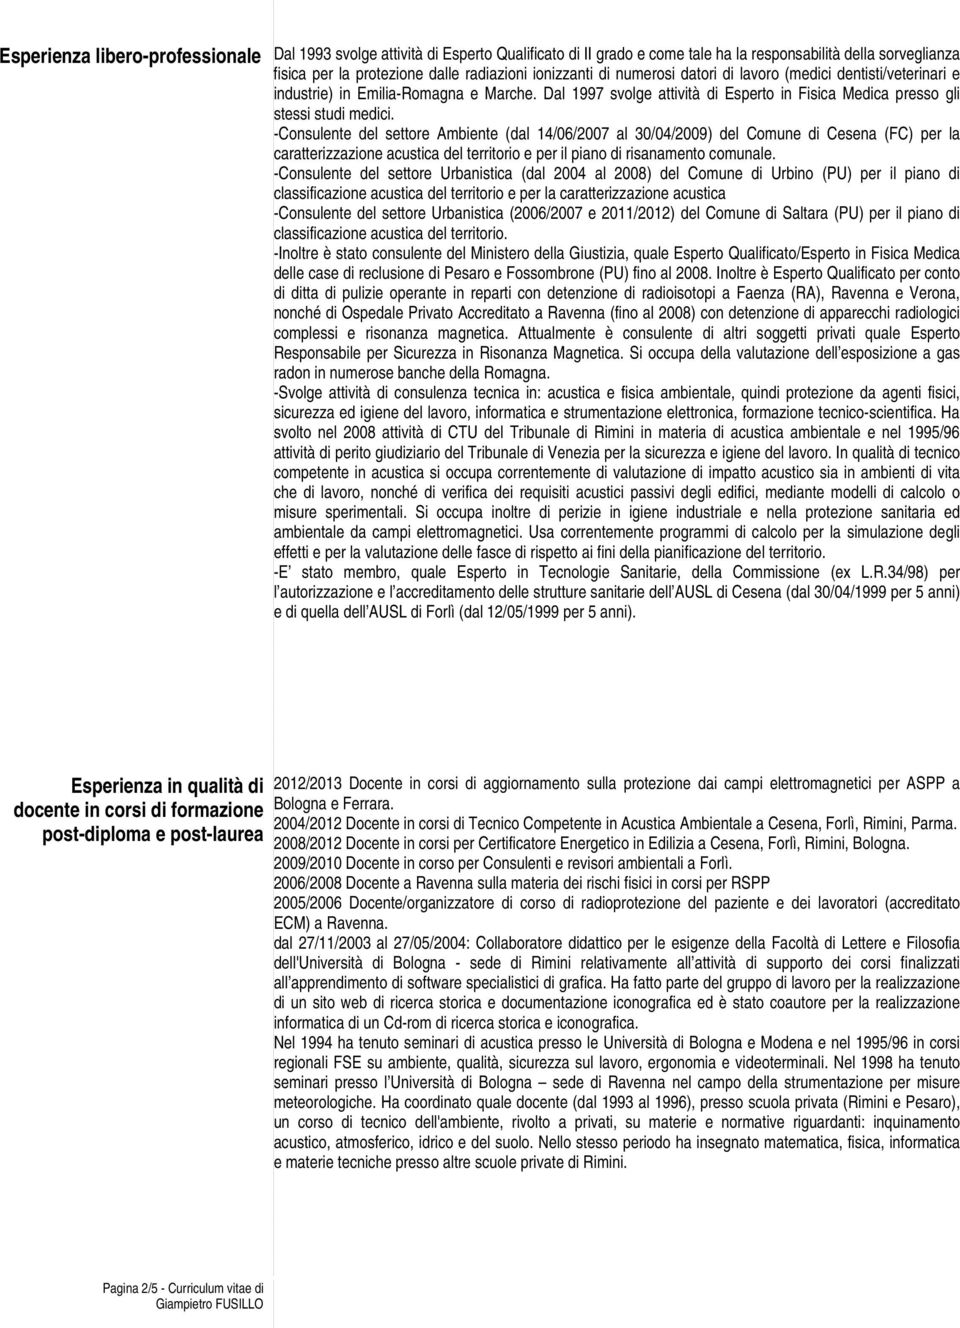 -Consulente del settore Ambiente (dal 14/06/2007 al 30/04/2009) del Comune di Cesena (FC) per la caratterizzazione acustica del territorio e per il piano di risanamento comunale.